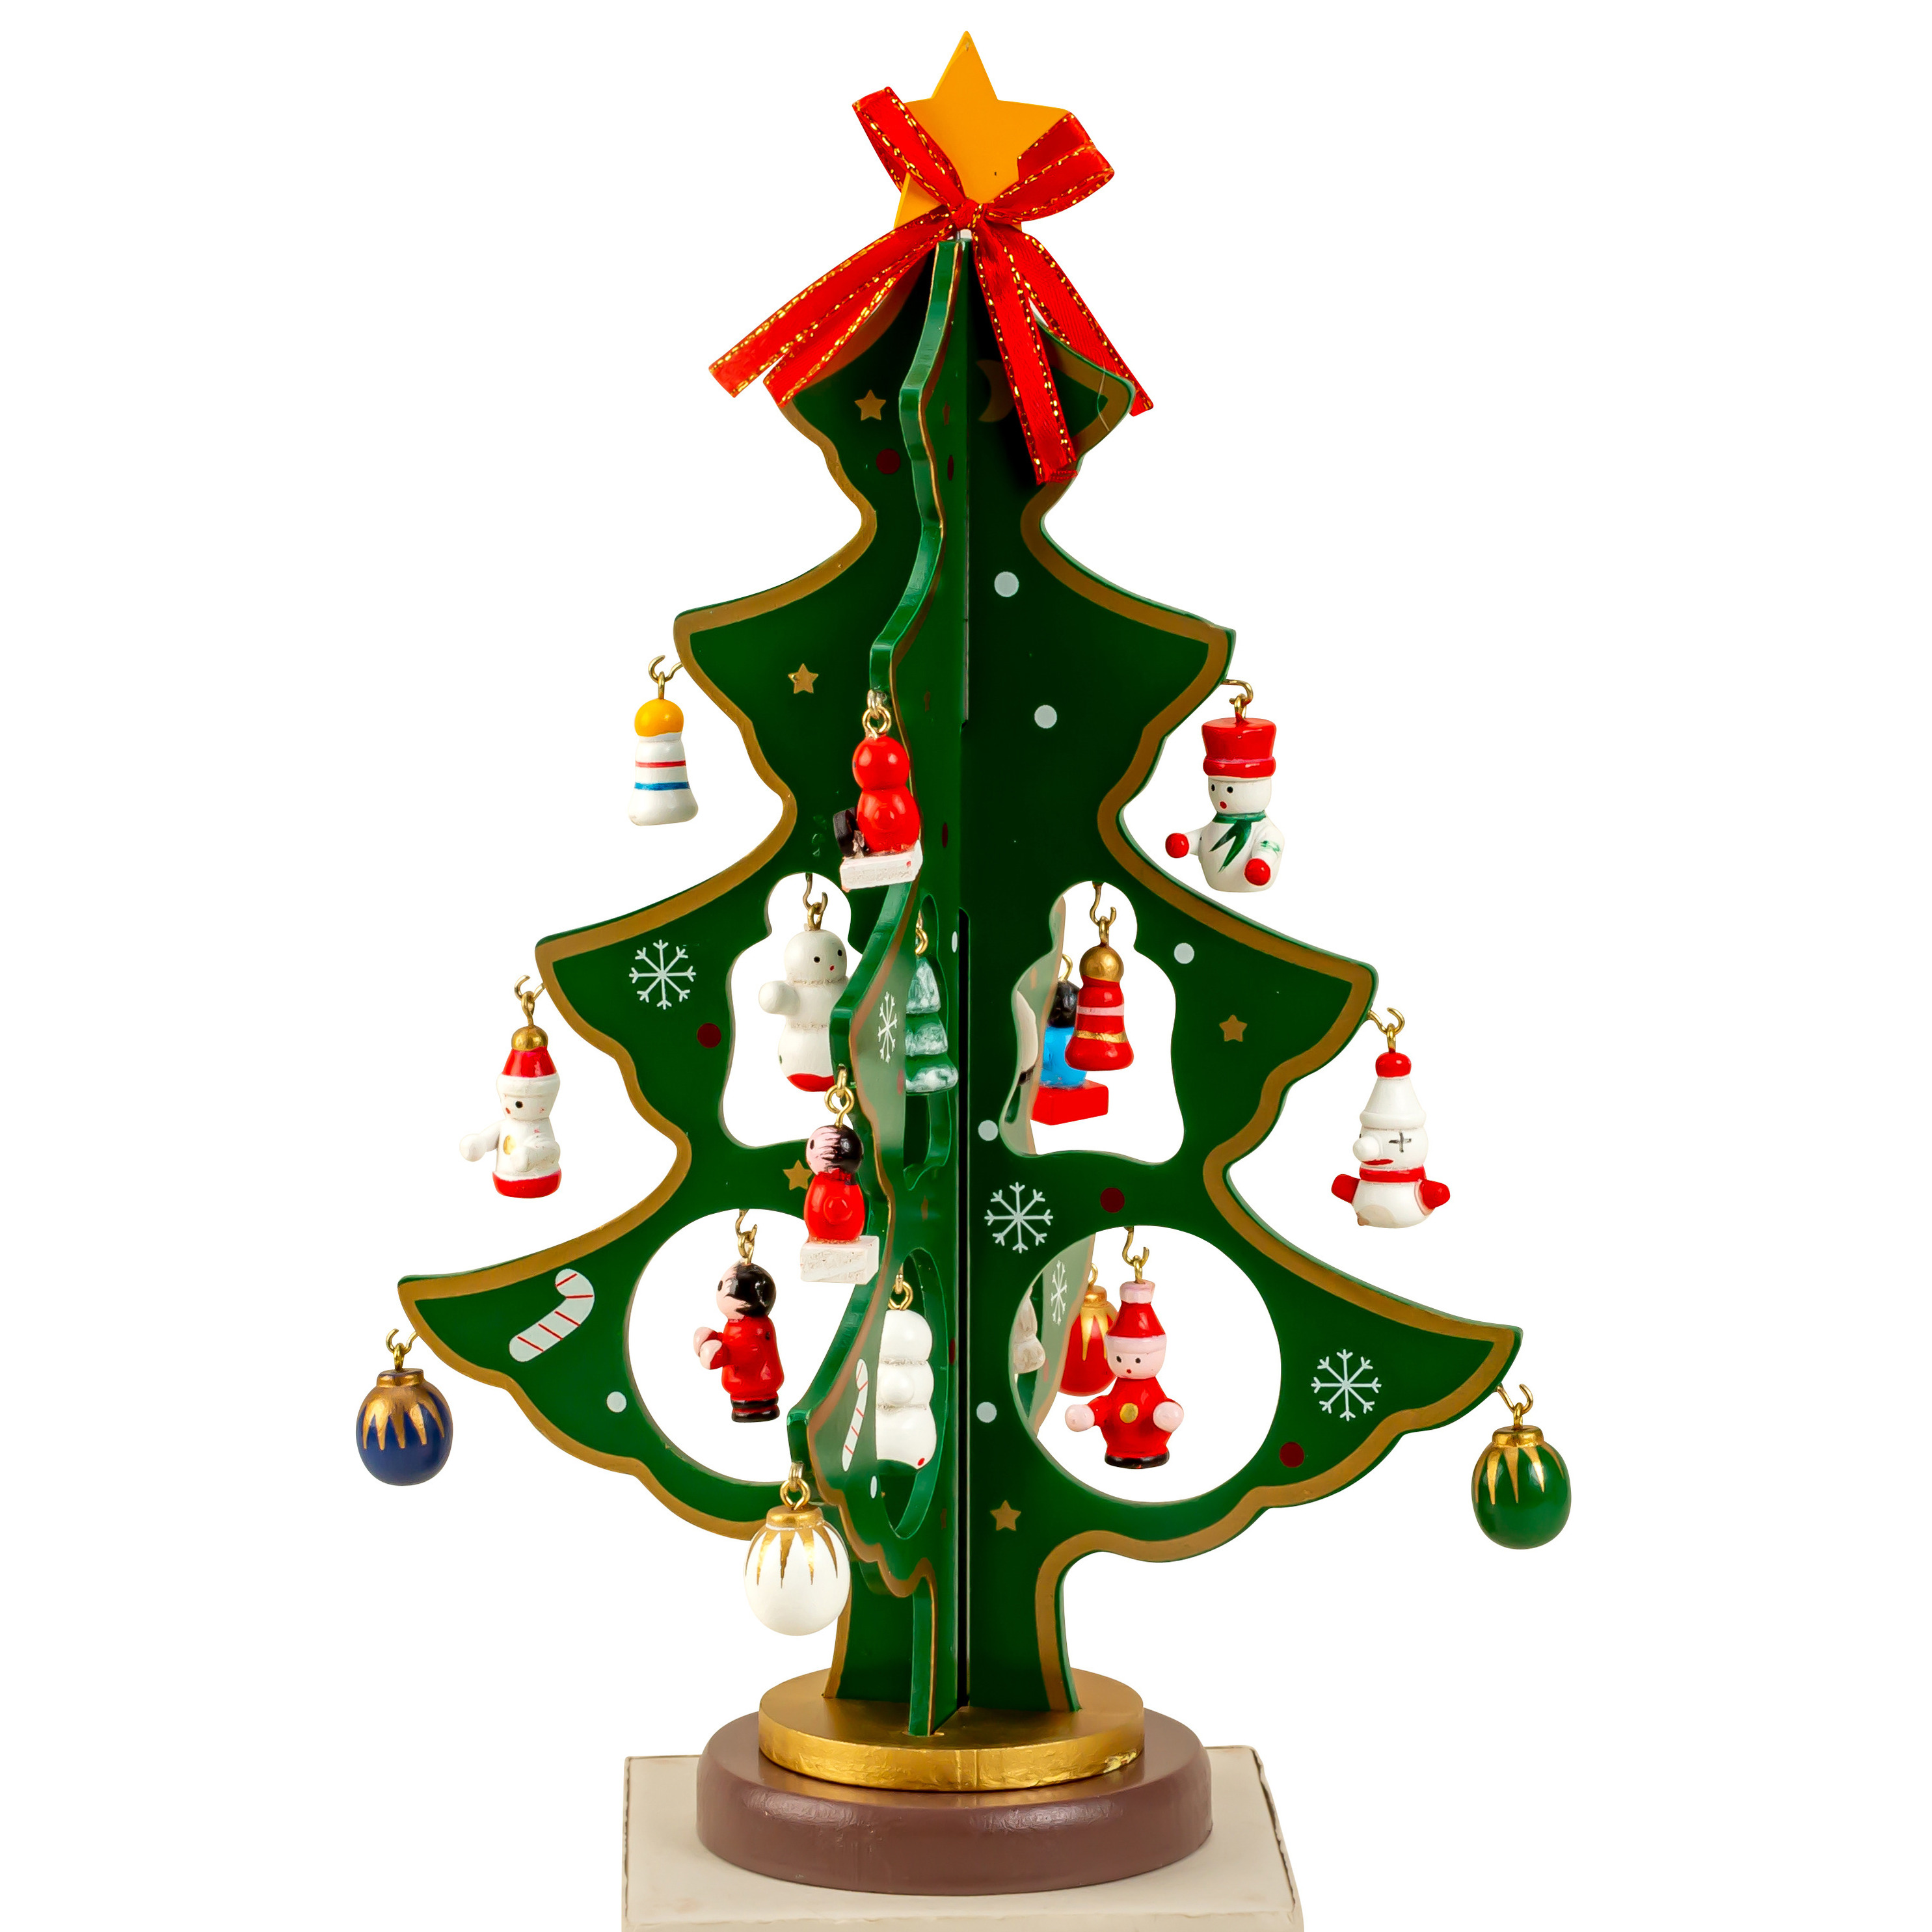 Klein decoratie kerstboompje groen met hangers H25 cm hout